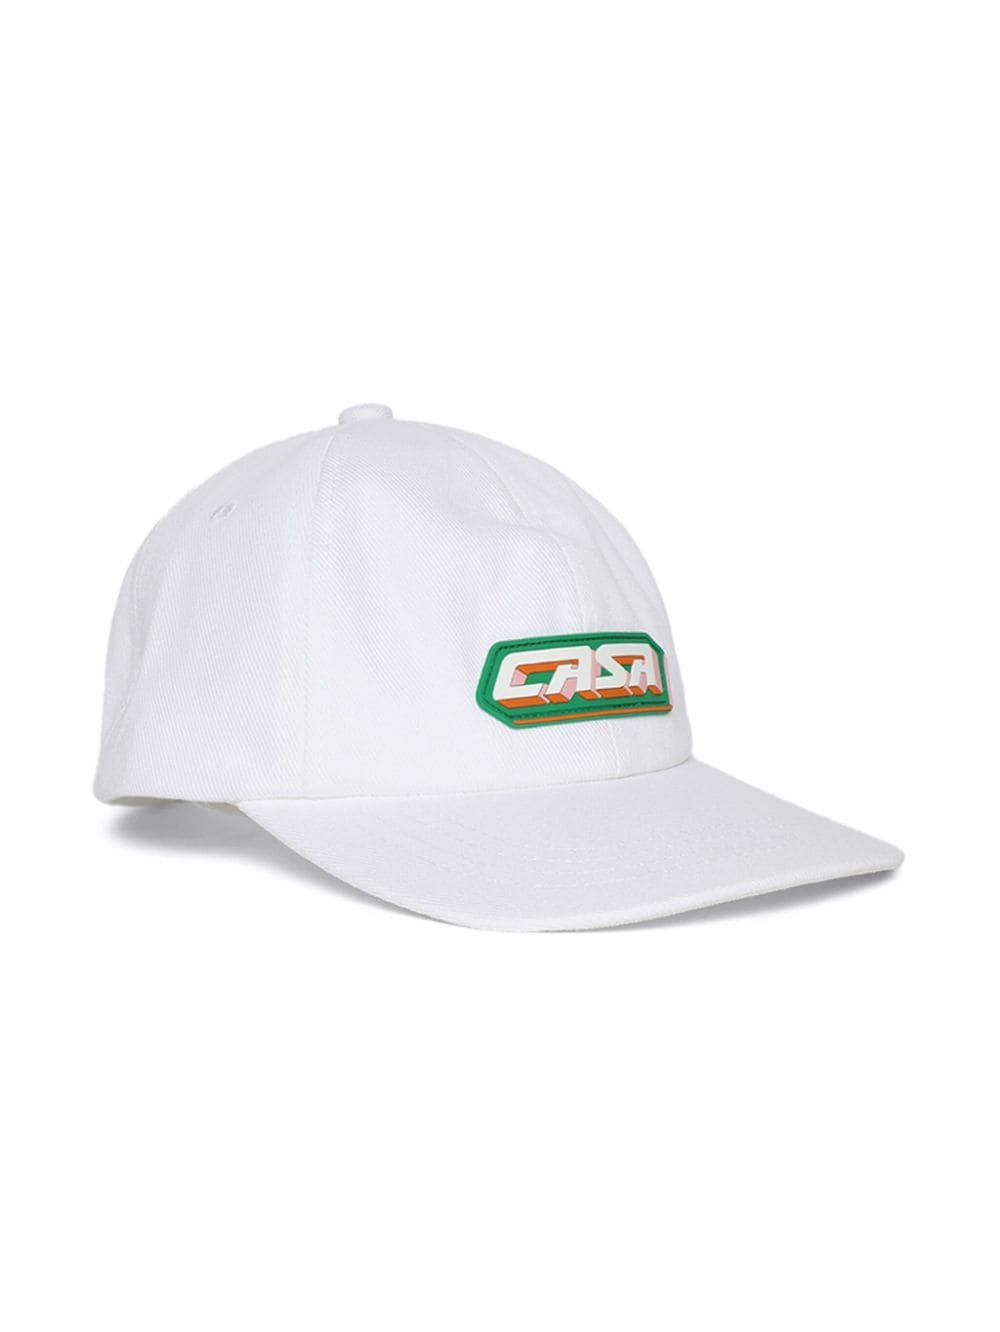 Casablanca Casa Racing cotton cap - Beige